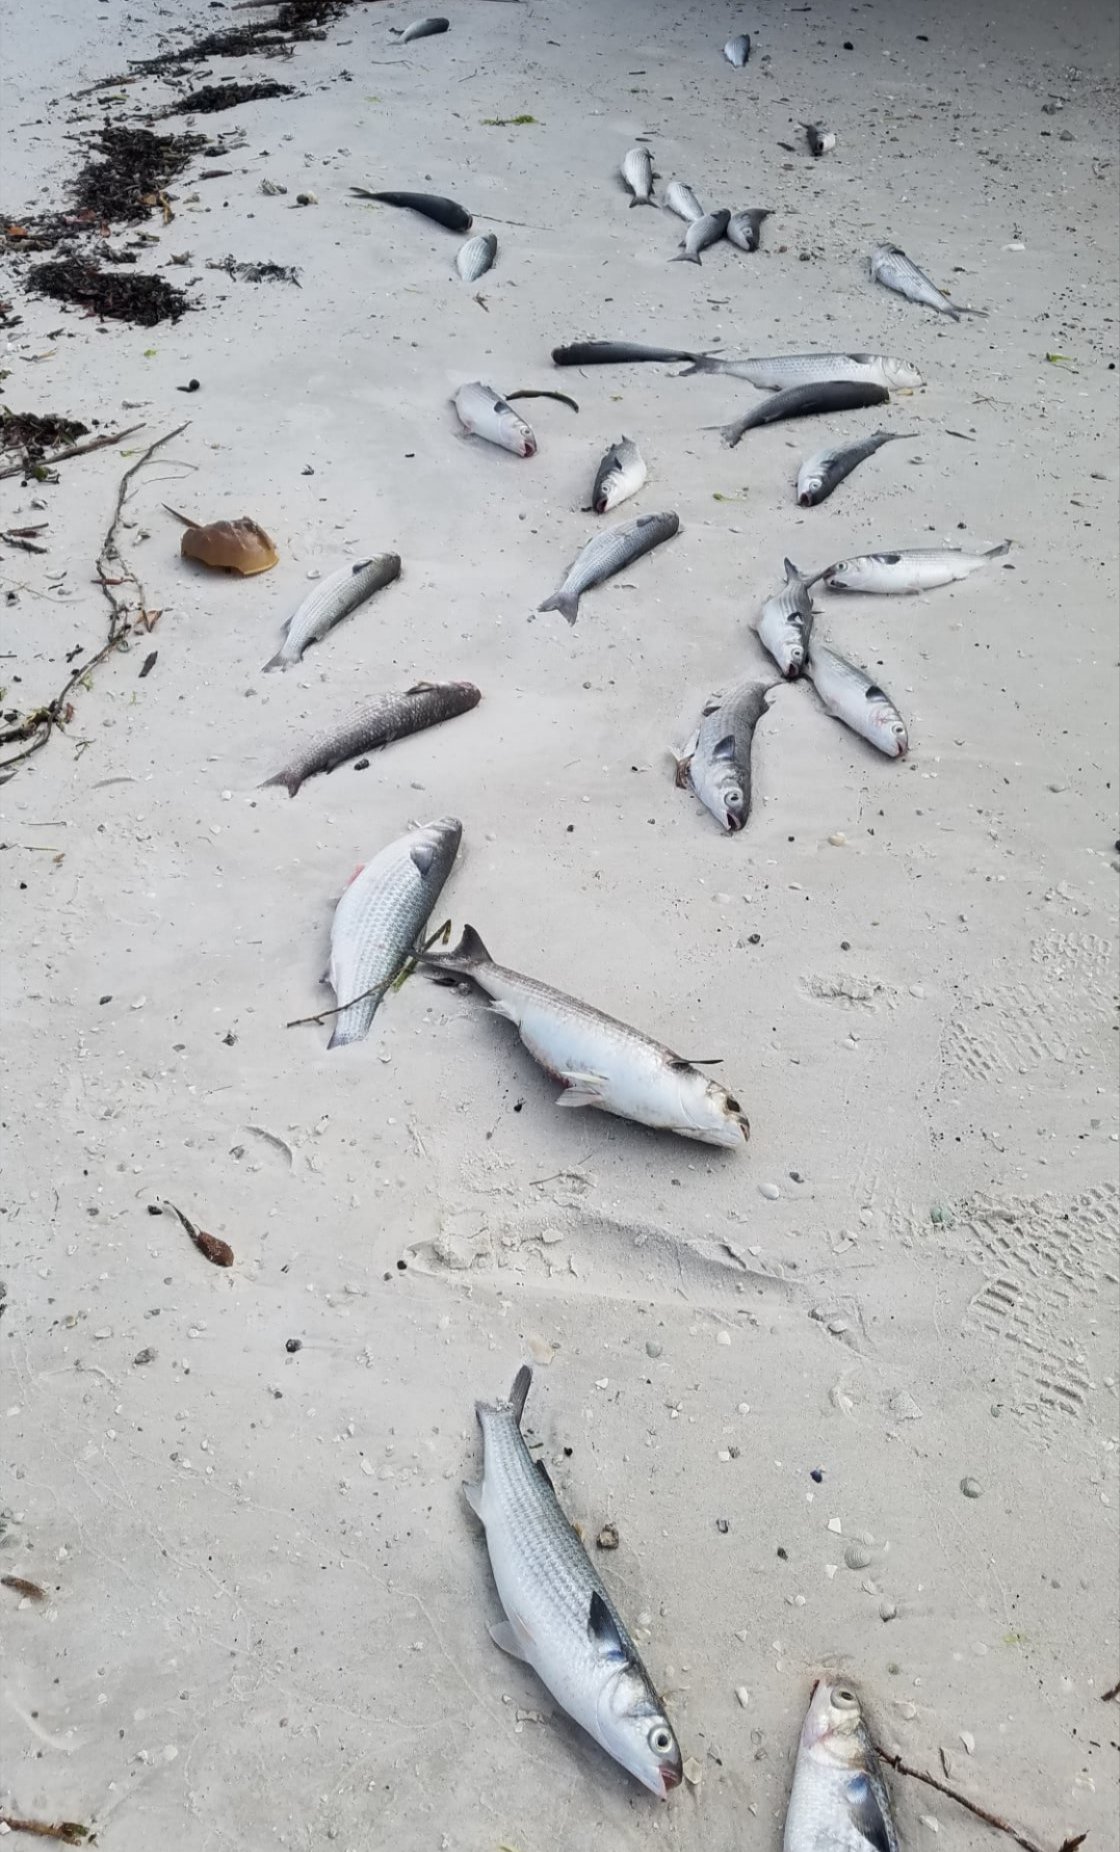 San Carlos Bay fish kill